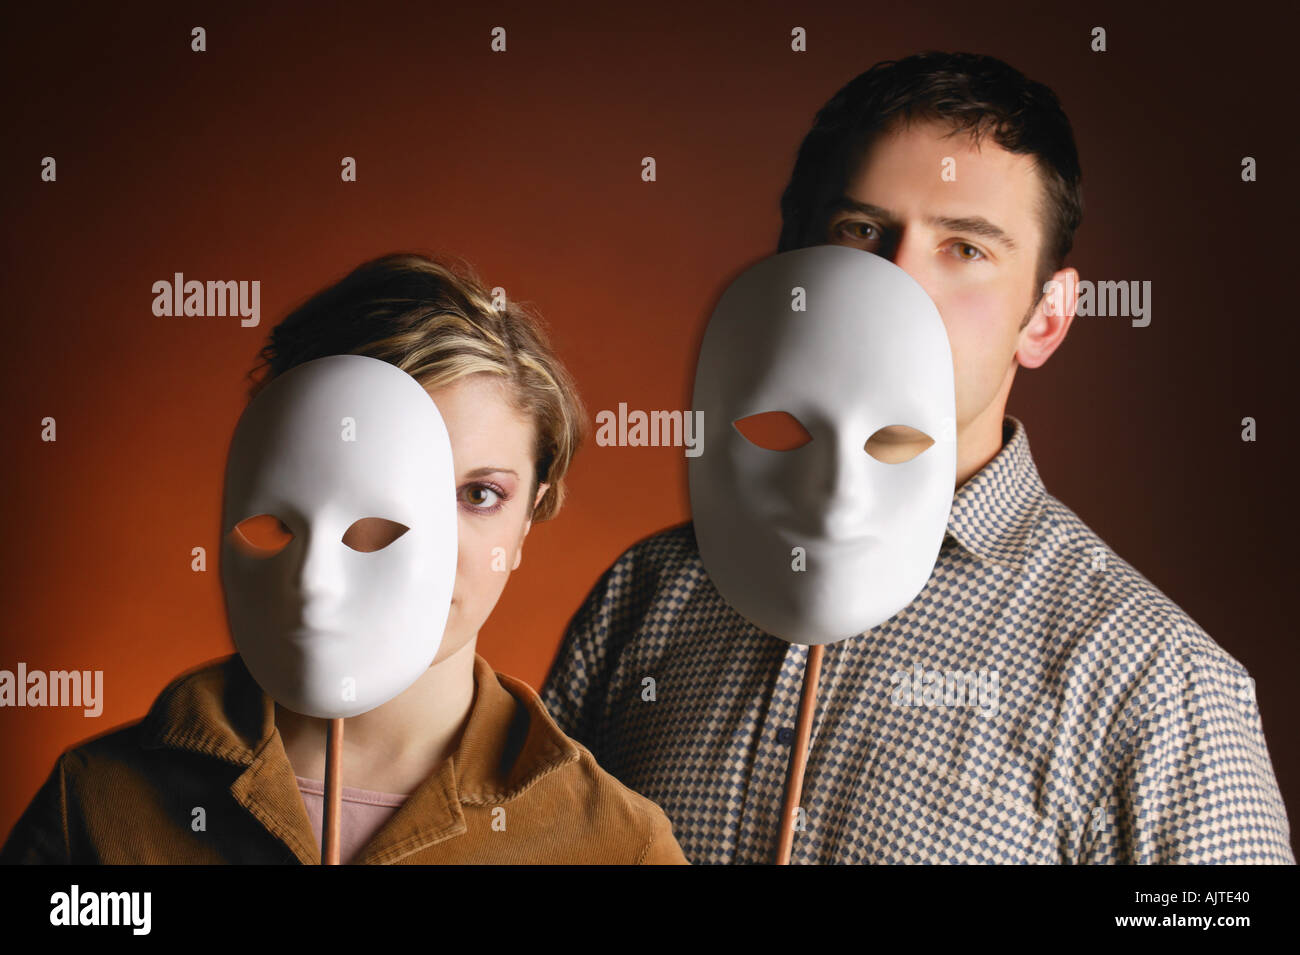 Шоу маска кто скрывается под маской мотылька. Человек в маске. Социальные маски. Роли маски.